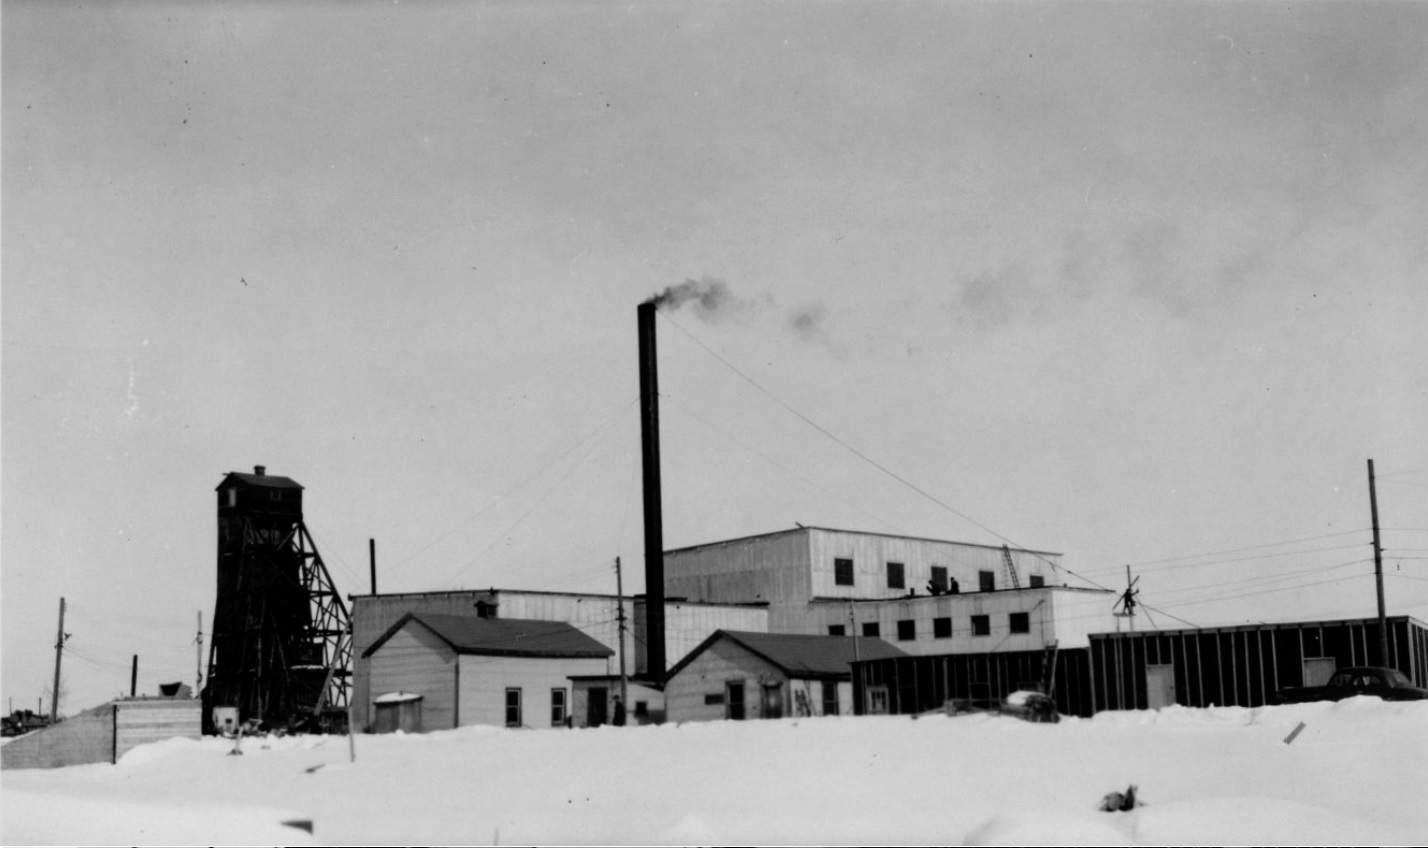 Photographie en noir et blanc de plusieurs bâtiments miniers en planche, dont un chevalement et une cheminée, avec de la neige au sol.